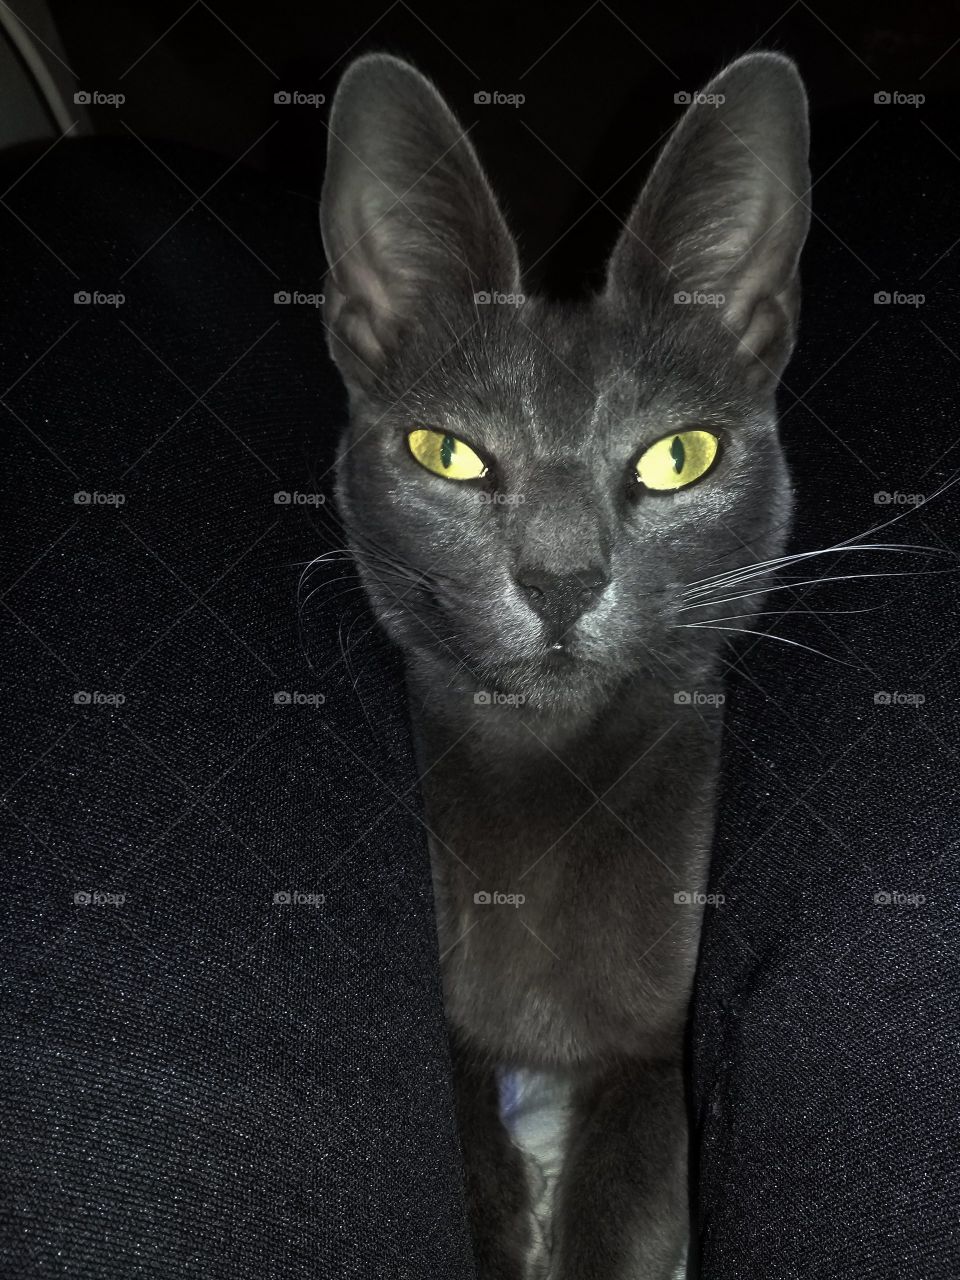 imagen de una gata adulta subida en la falda de su dueña y fotografiada en la oscuridad.